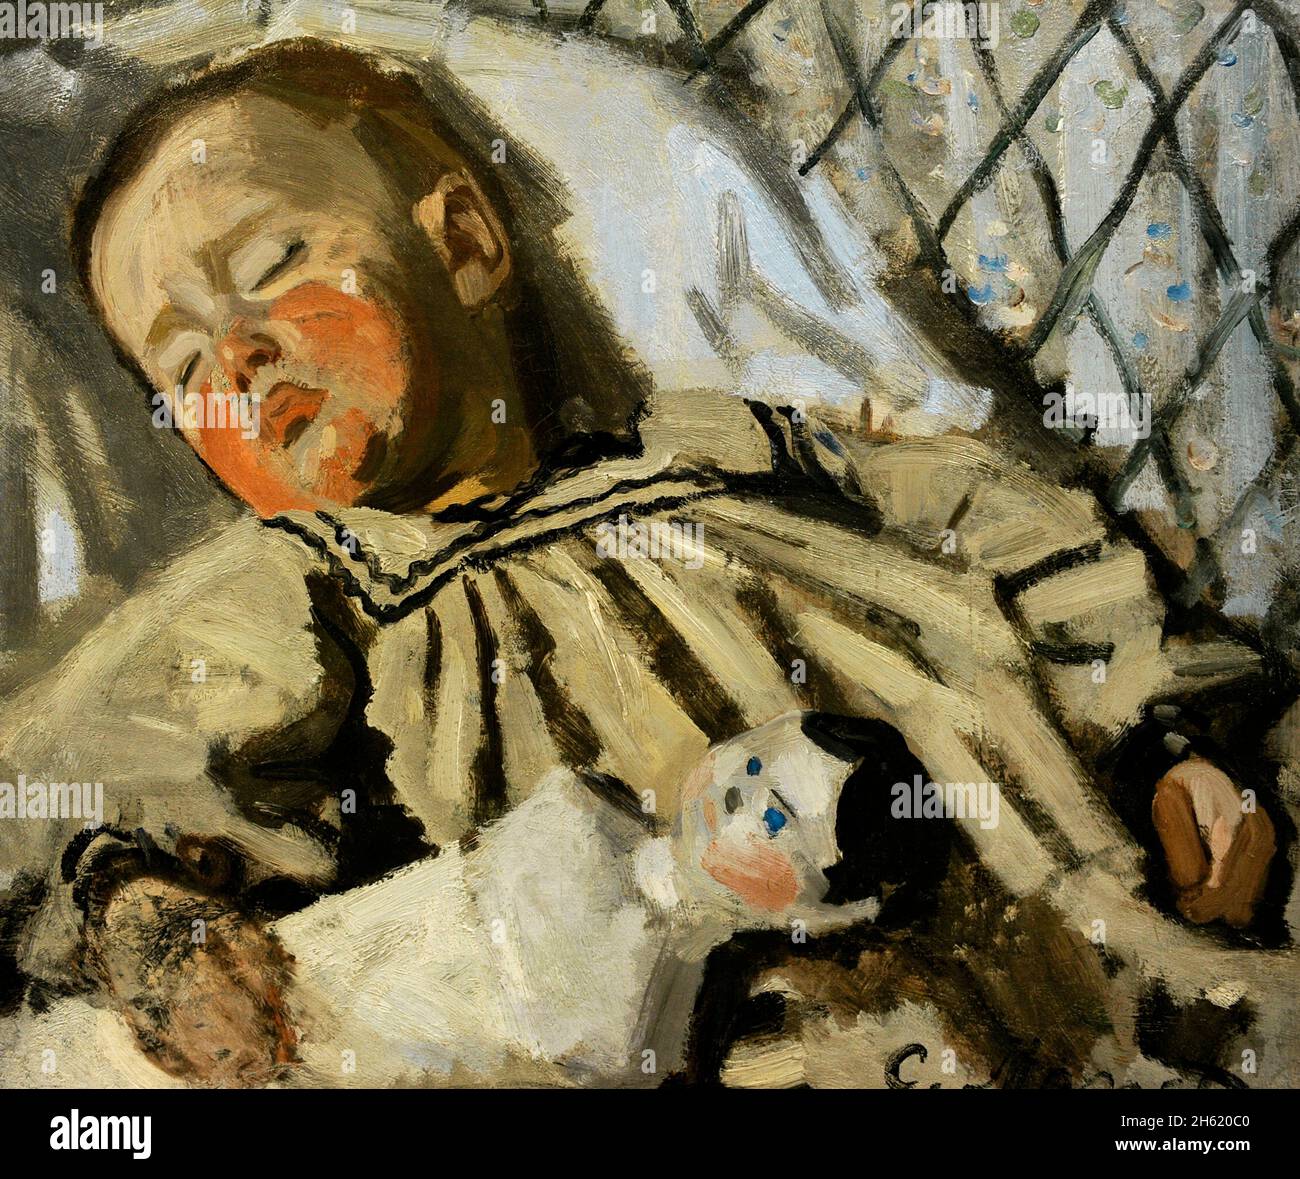 Claude Monet (1840-1926). Französischer impressionistischer Maler. Der Sohn des Künstlers, 1868. Öl auf Leinwand (42,5 x 50 cm). Ny Carlsberg Glyptotek. Kopenhagen, Dänemark. Stockfoto